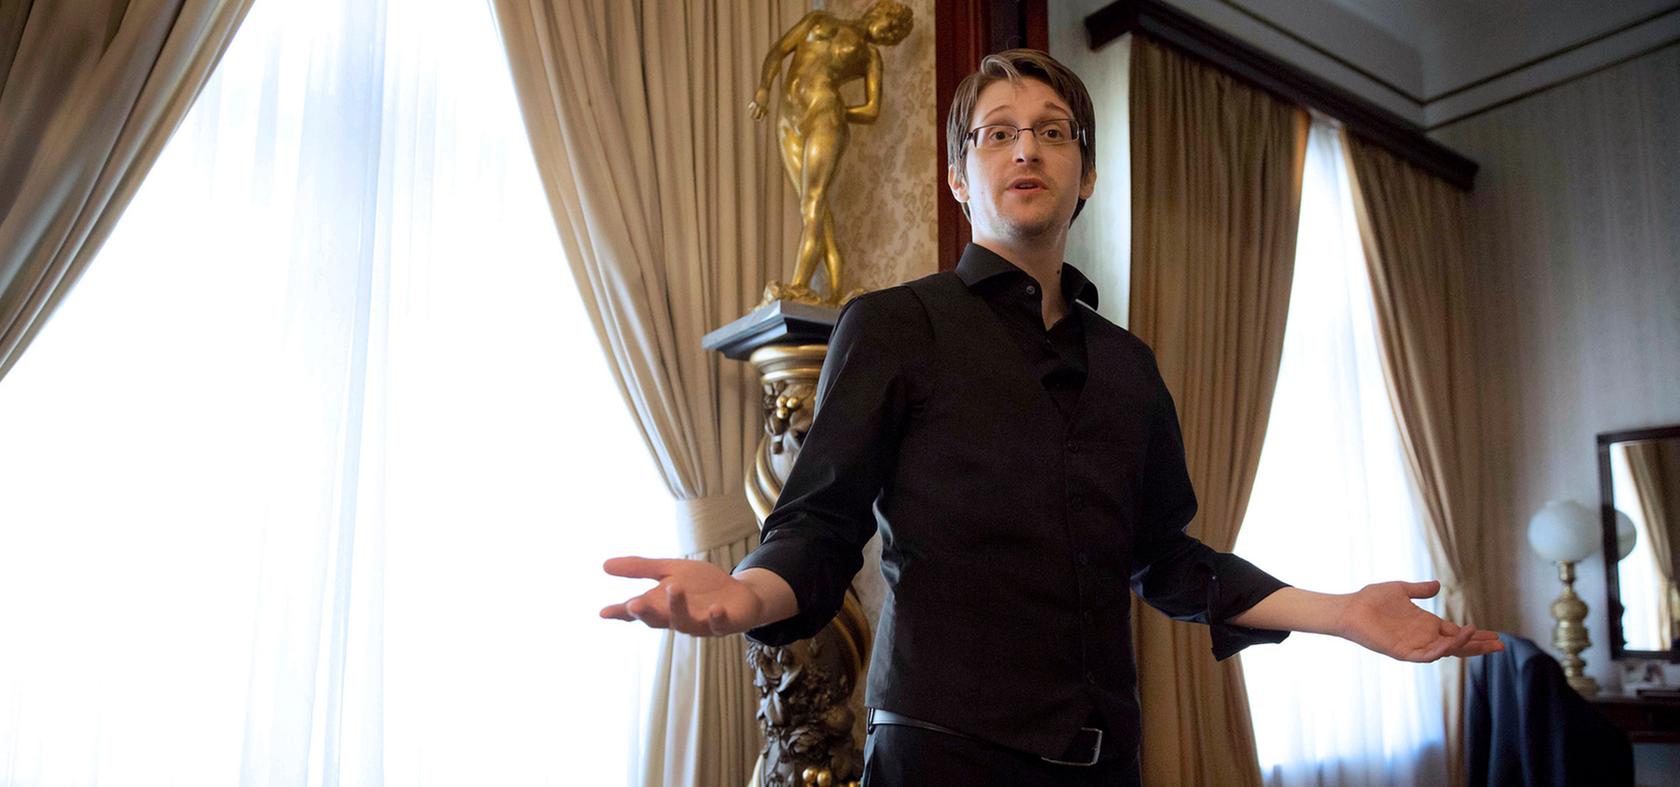 Findet das Handeln der deutschen Regierung "bedauerlich": Edward Snowden.